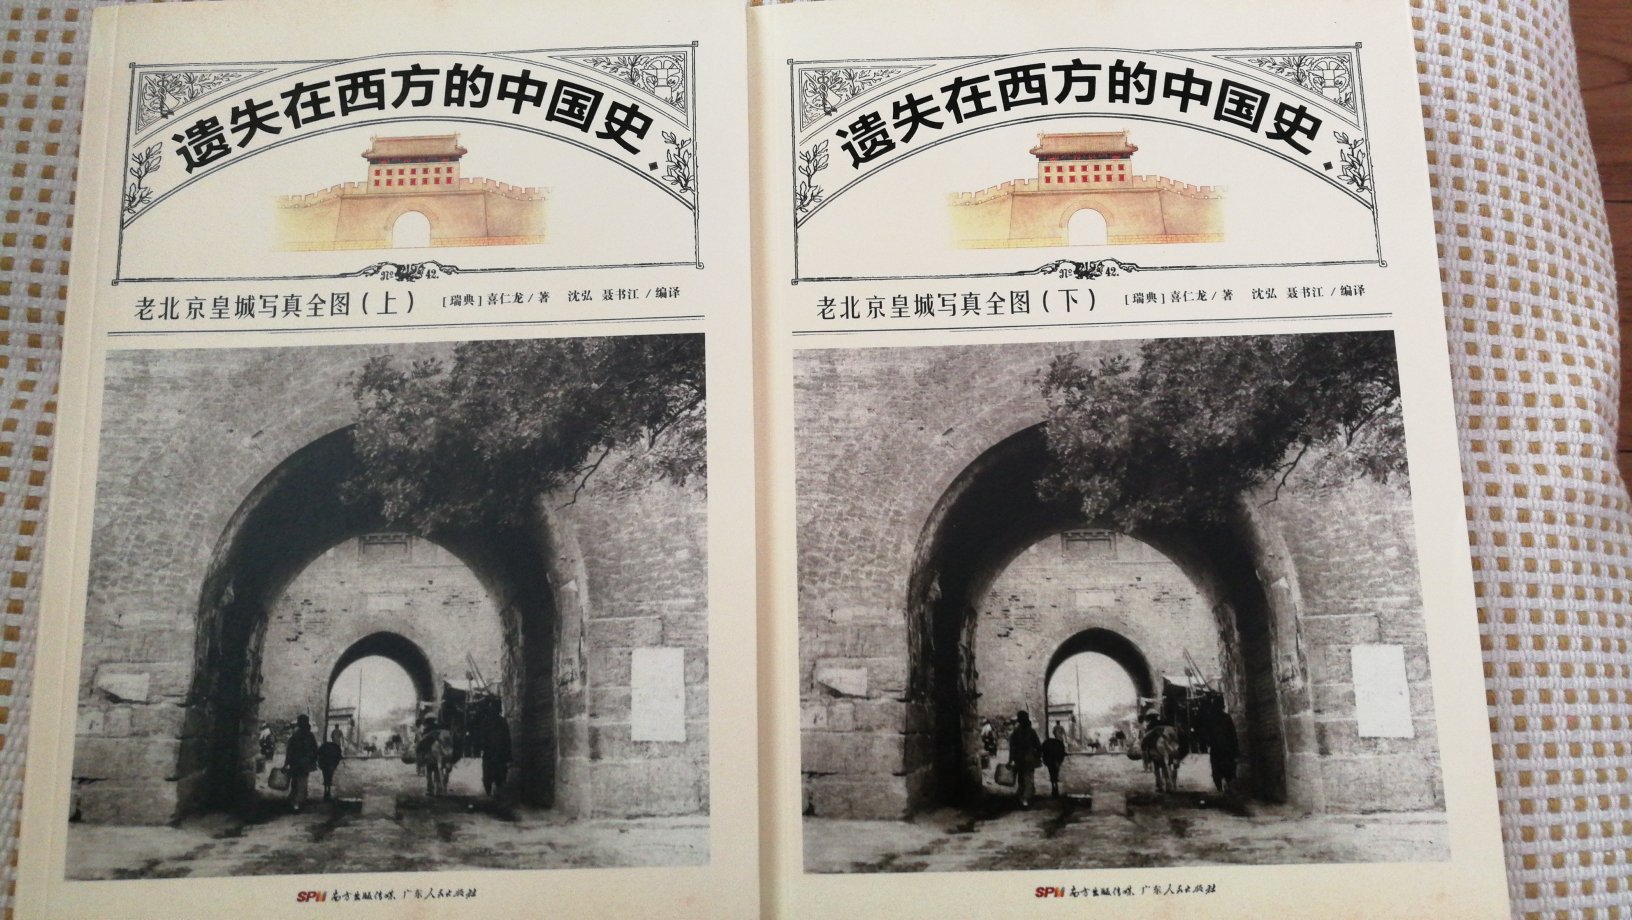 这套书是瑞典人喜仁龙写的，描述老北京的样子，非常好的照片，照片上很多建筑物已不复存在。再看这一幅幅珍贵的图片和一行行文字描述，感受我泱泱中华文明古老的样子和生活。